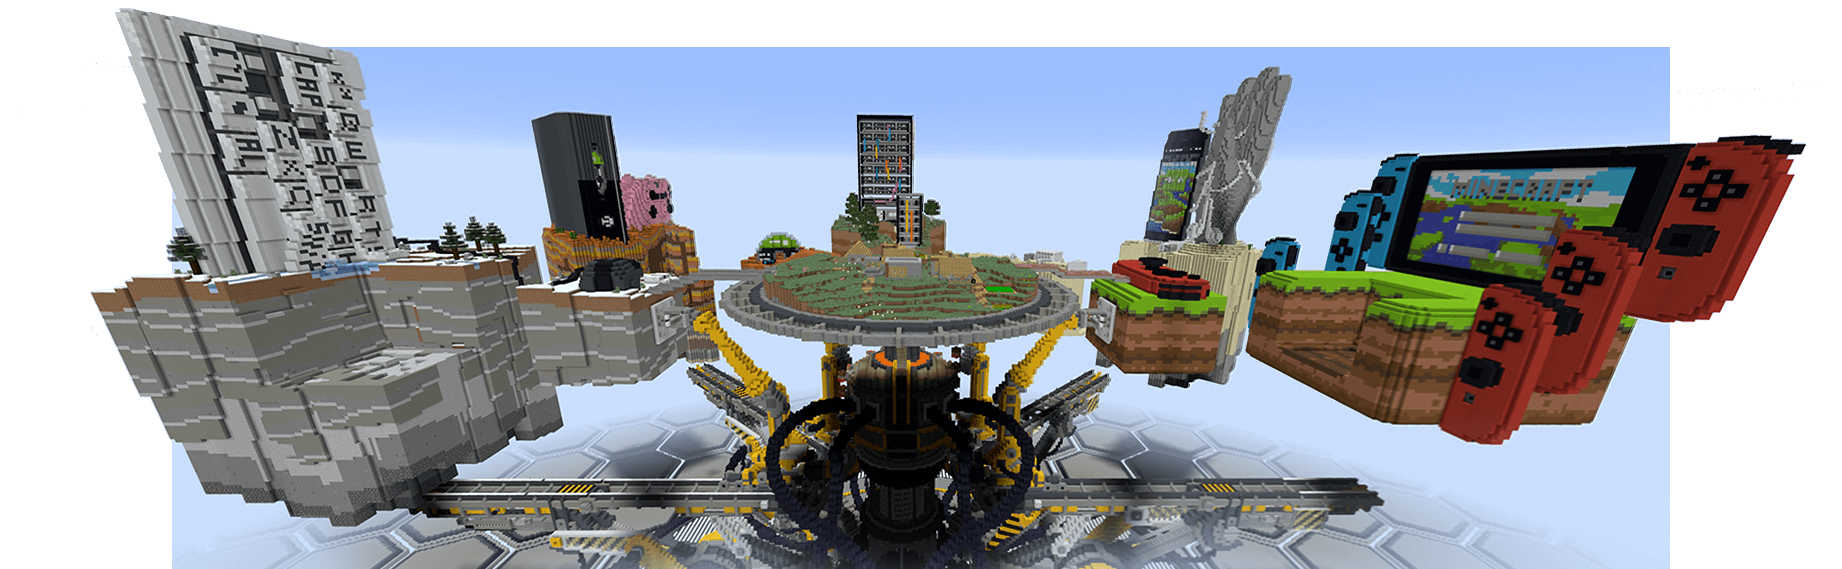 Stroj vzájomnosti z hry Minecraft predstavujúci platformy, na ktorých možno hrať hru Minecraft: PC, Xbox, mobilné zariadenie a Nintendo Switch.